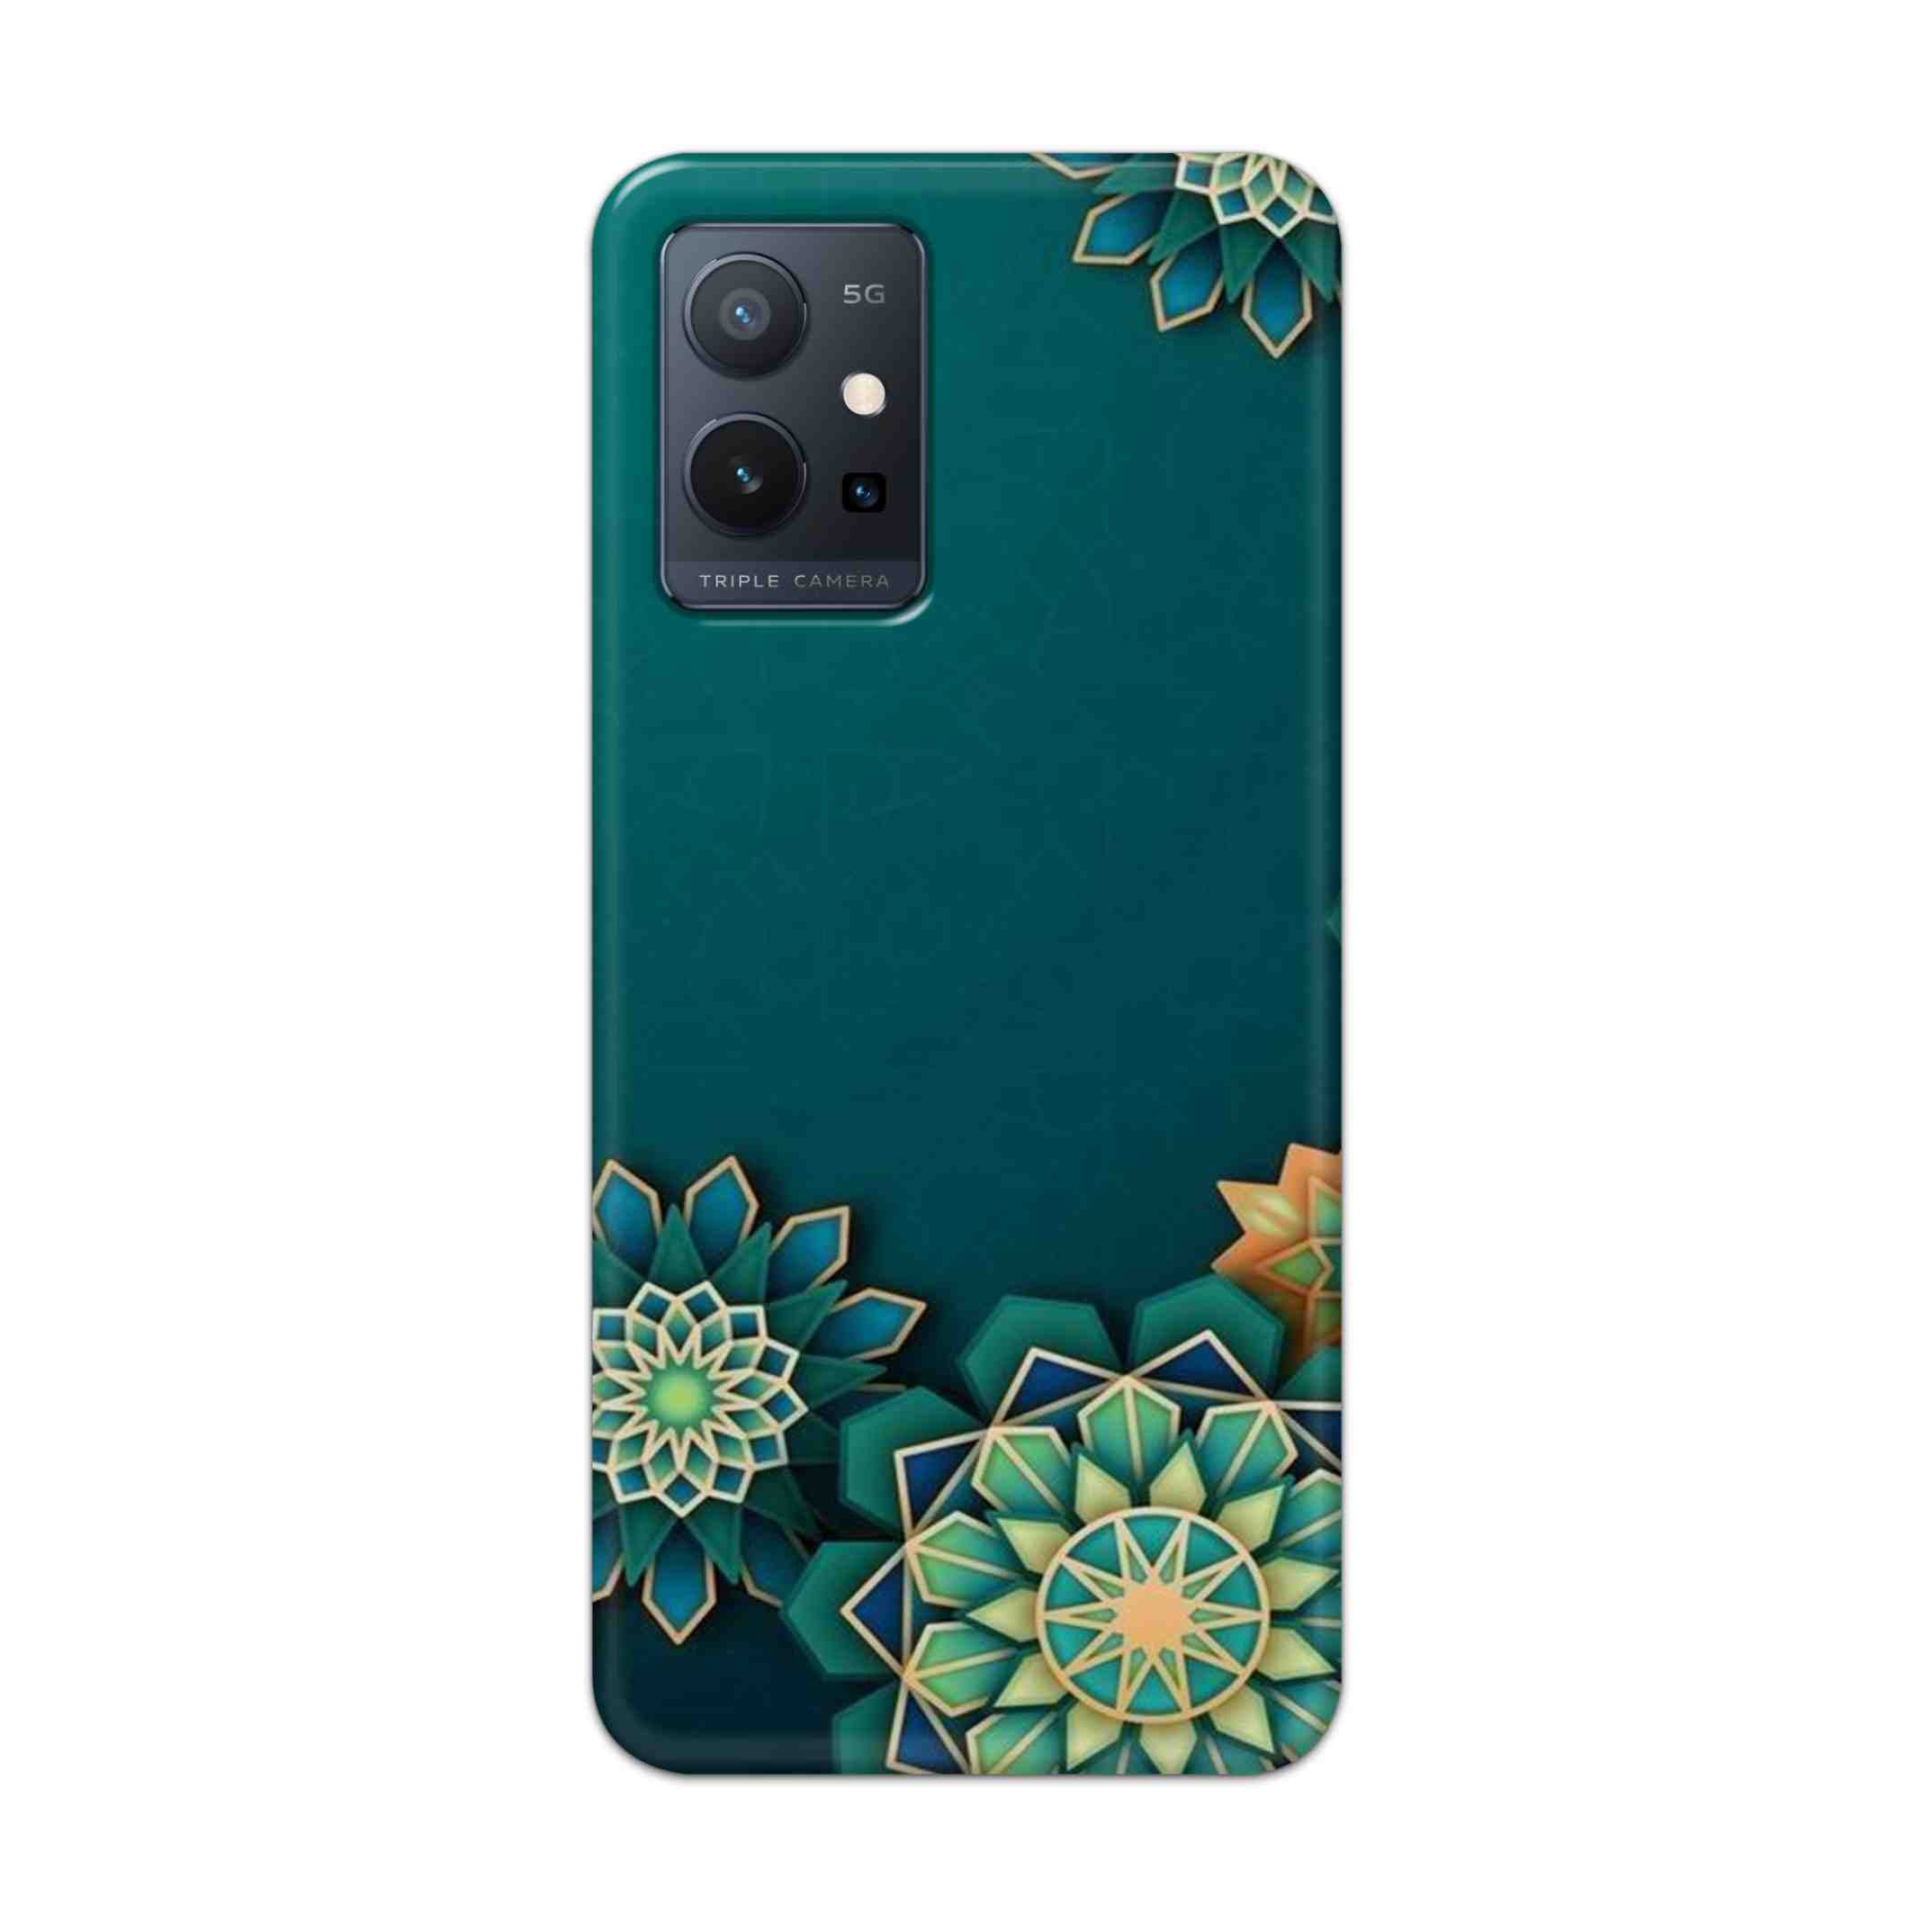 Buy Green Flower Hard Back Mobile Phone Case Cover For Vivo T1 5G Online